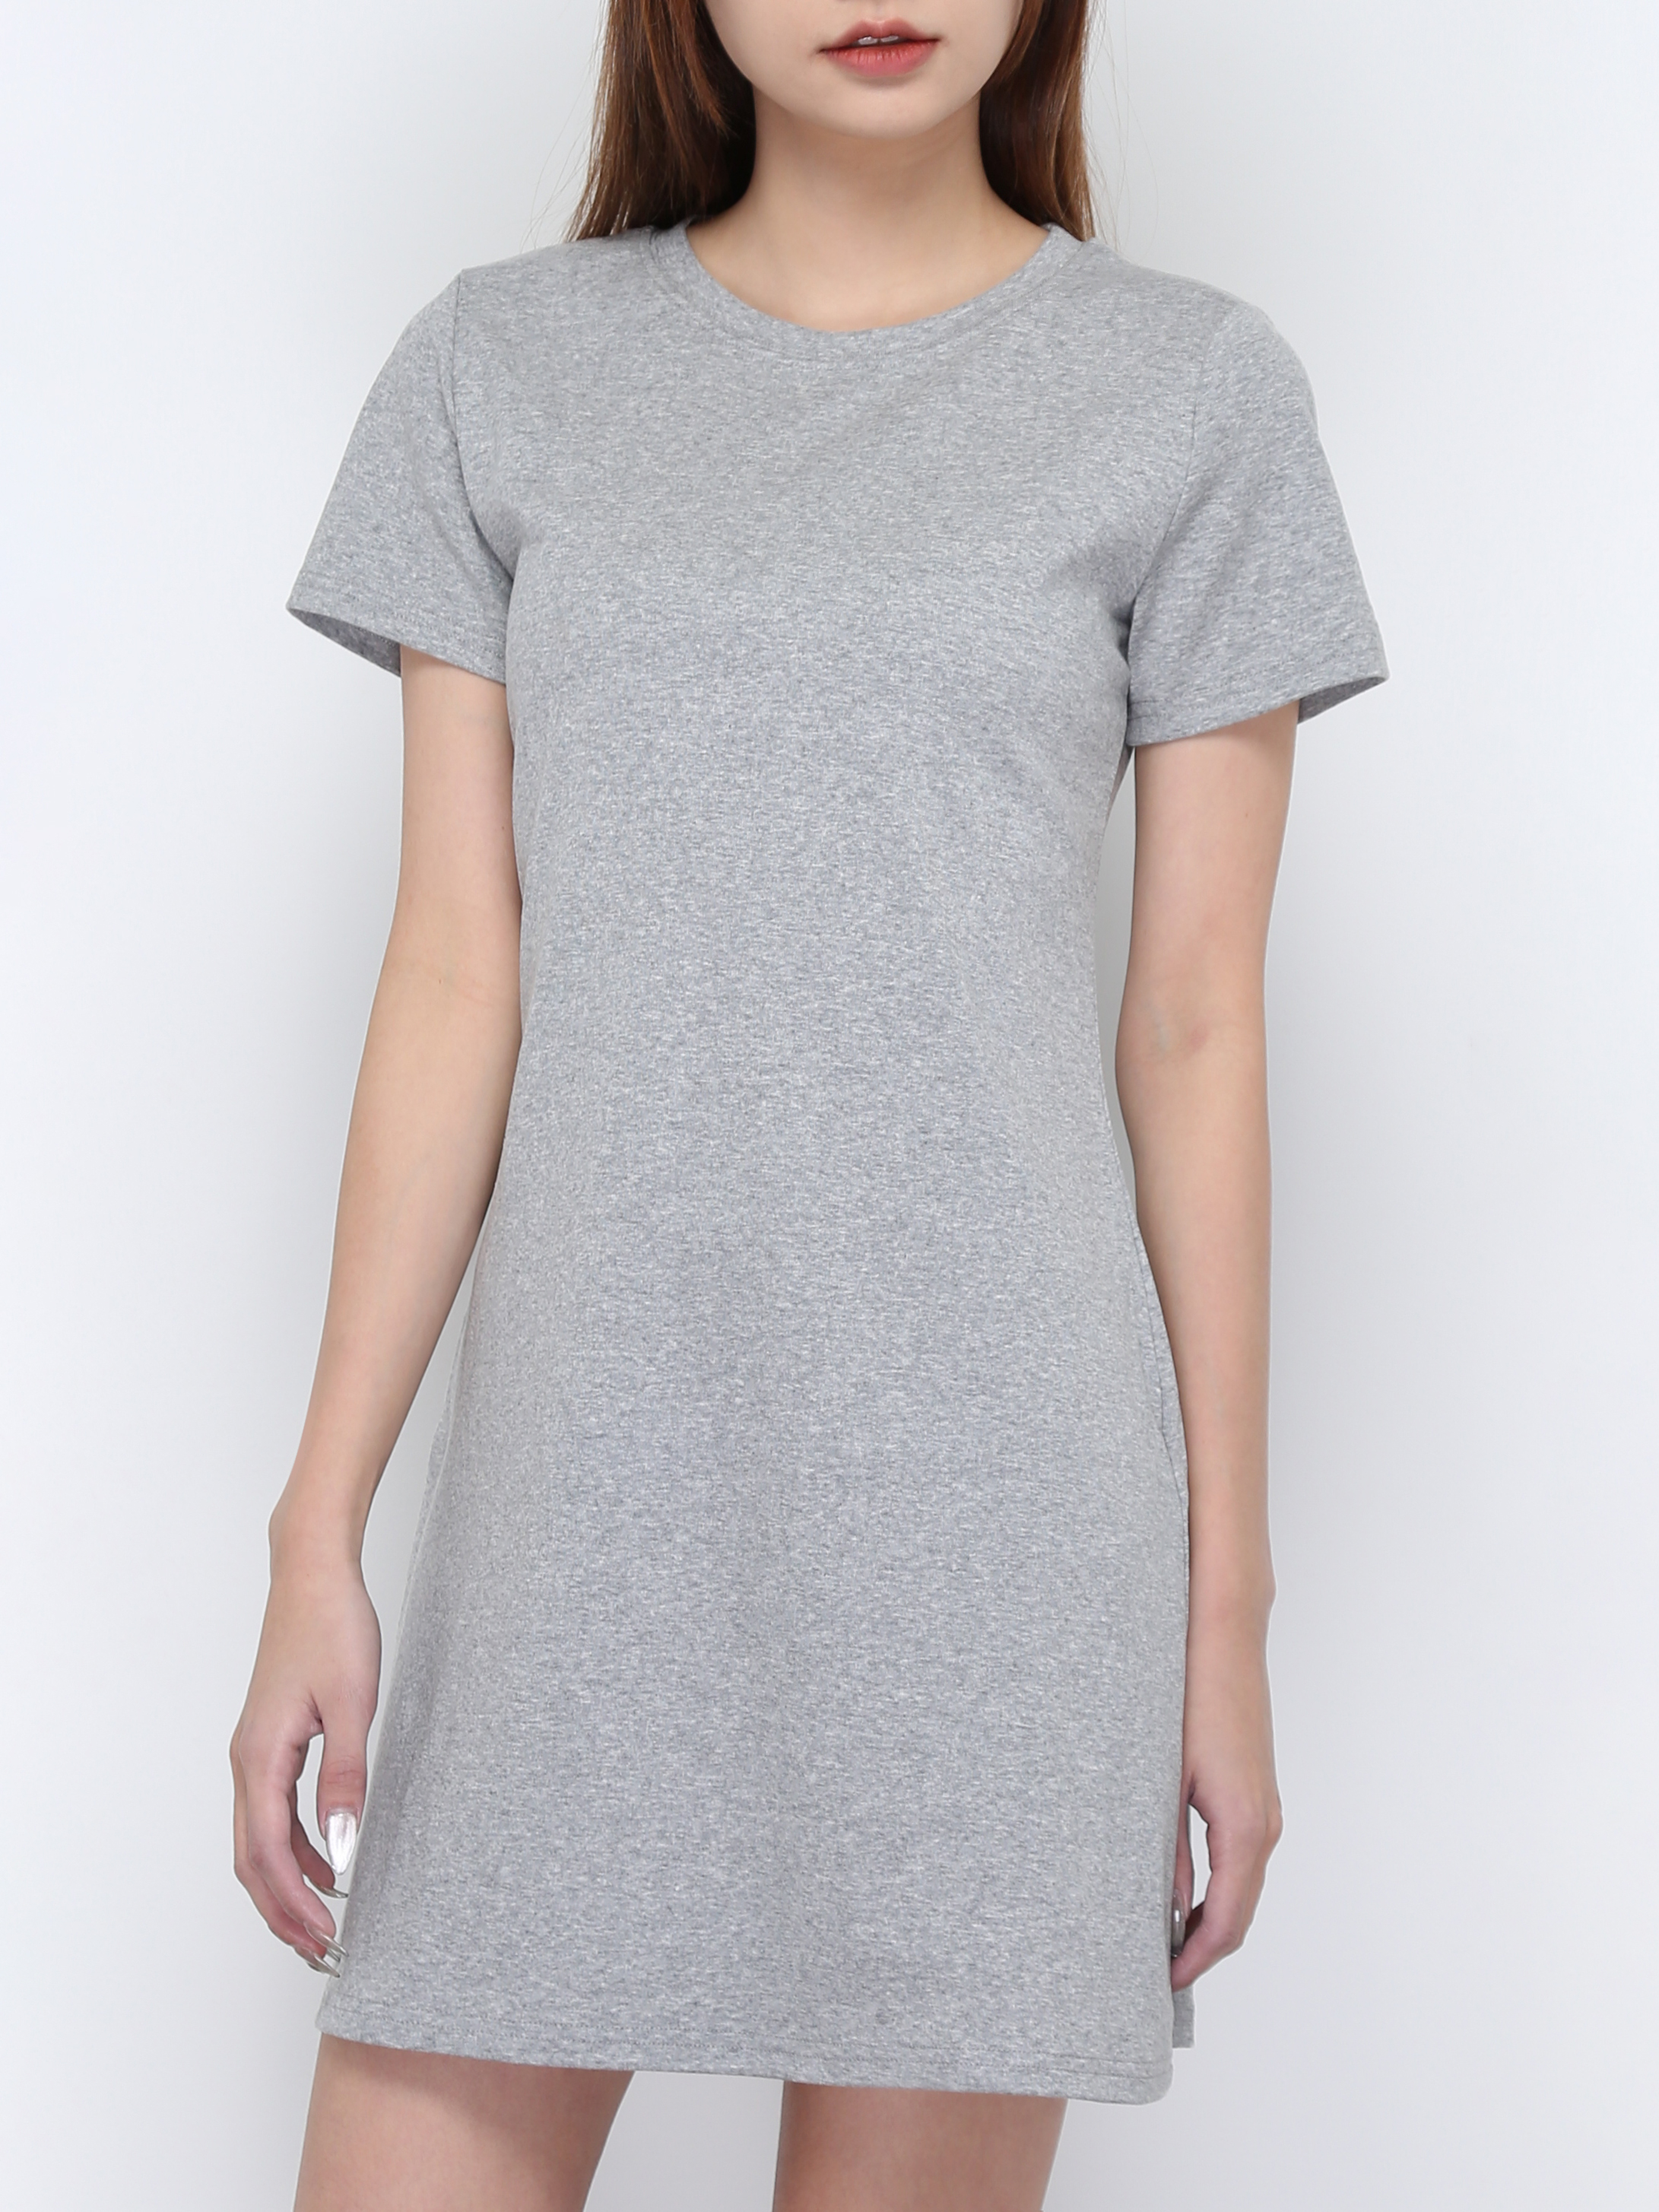 Basic Plain Tee Dress 16765